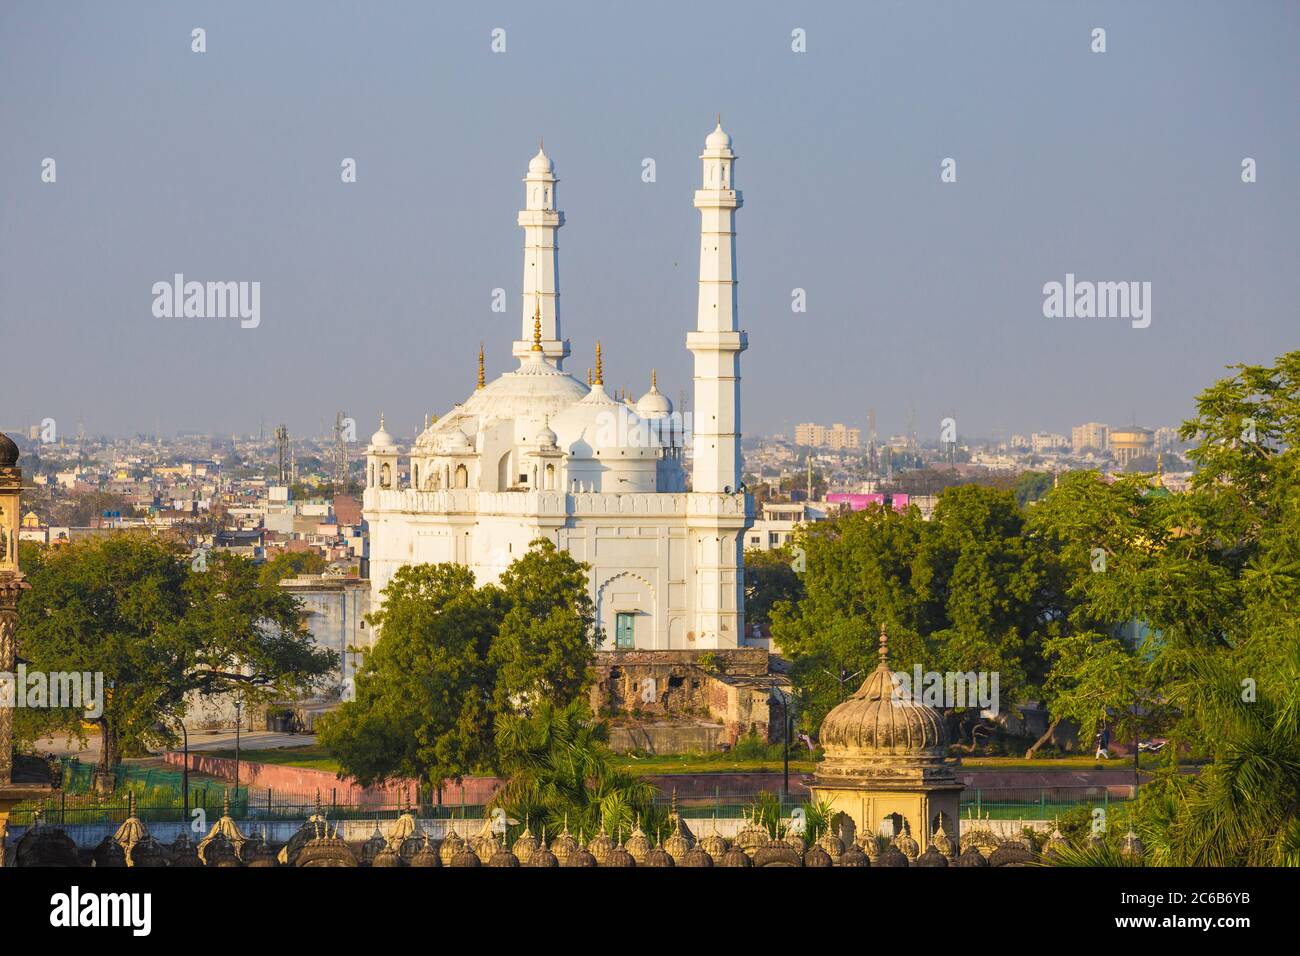 Blick auf die Teele Wali Moschee (Moschee auf dem Hügel), am Grab von Schah Peer Muhammad, Lucknow, Uttar Pradesh, Indien, Asien Stockfoto